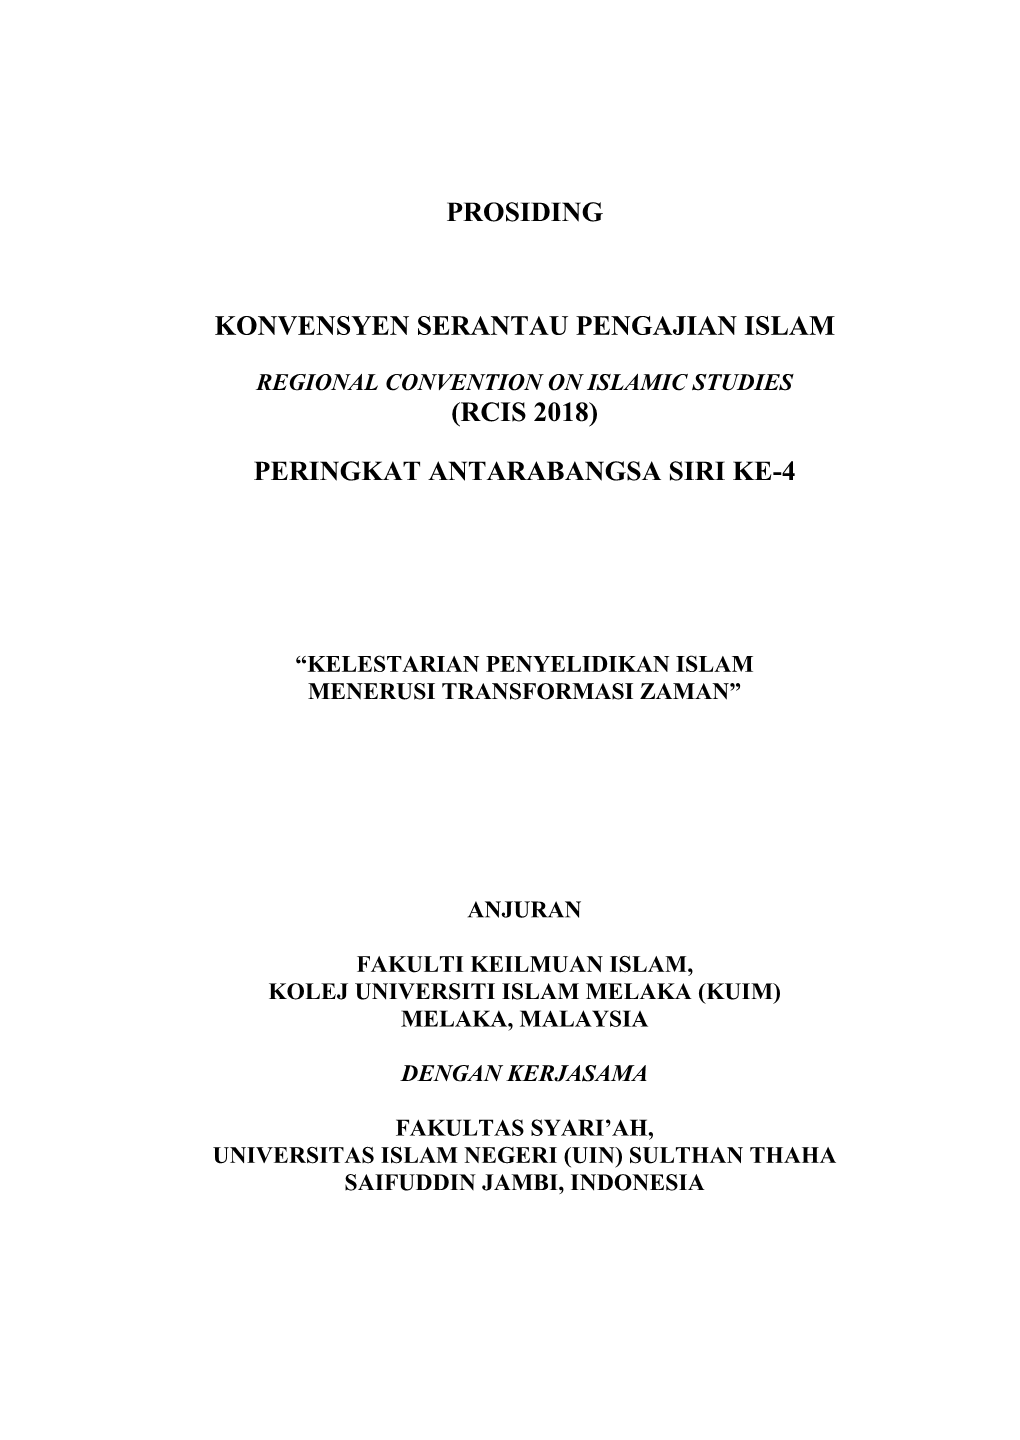 Prosiding Konvensyen Serantau Pengajian Islam Peringkat Antarabangsa Siri Ke-4 (Regional Convention on Islamic Studies) RCIS 2018 : 1-19